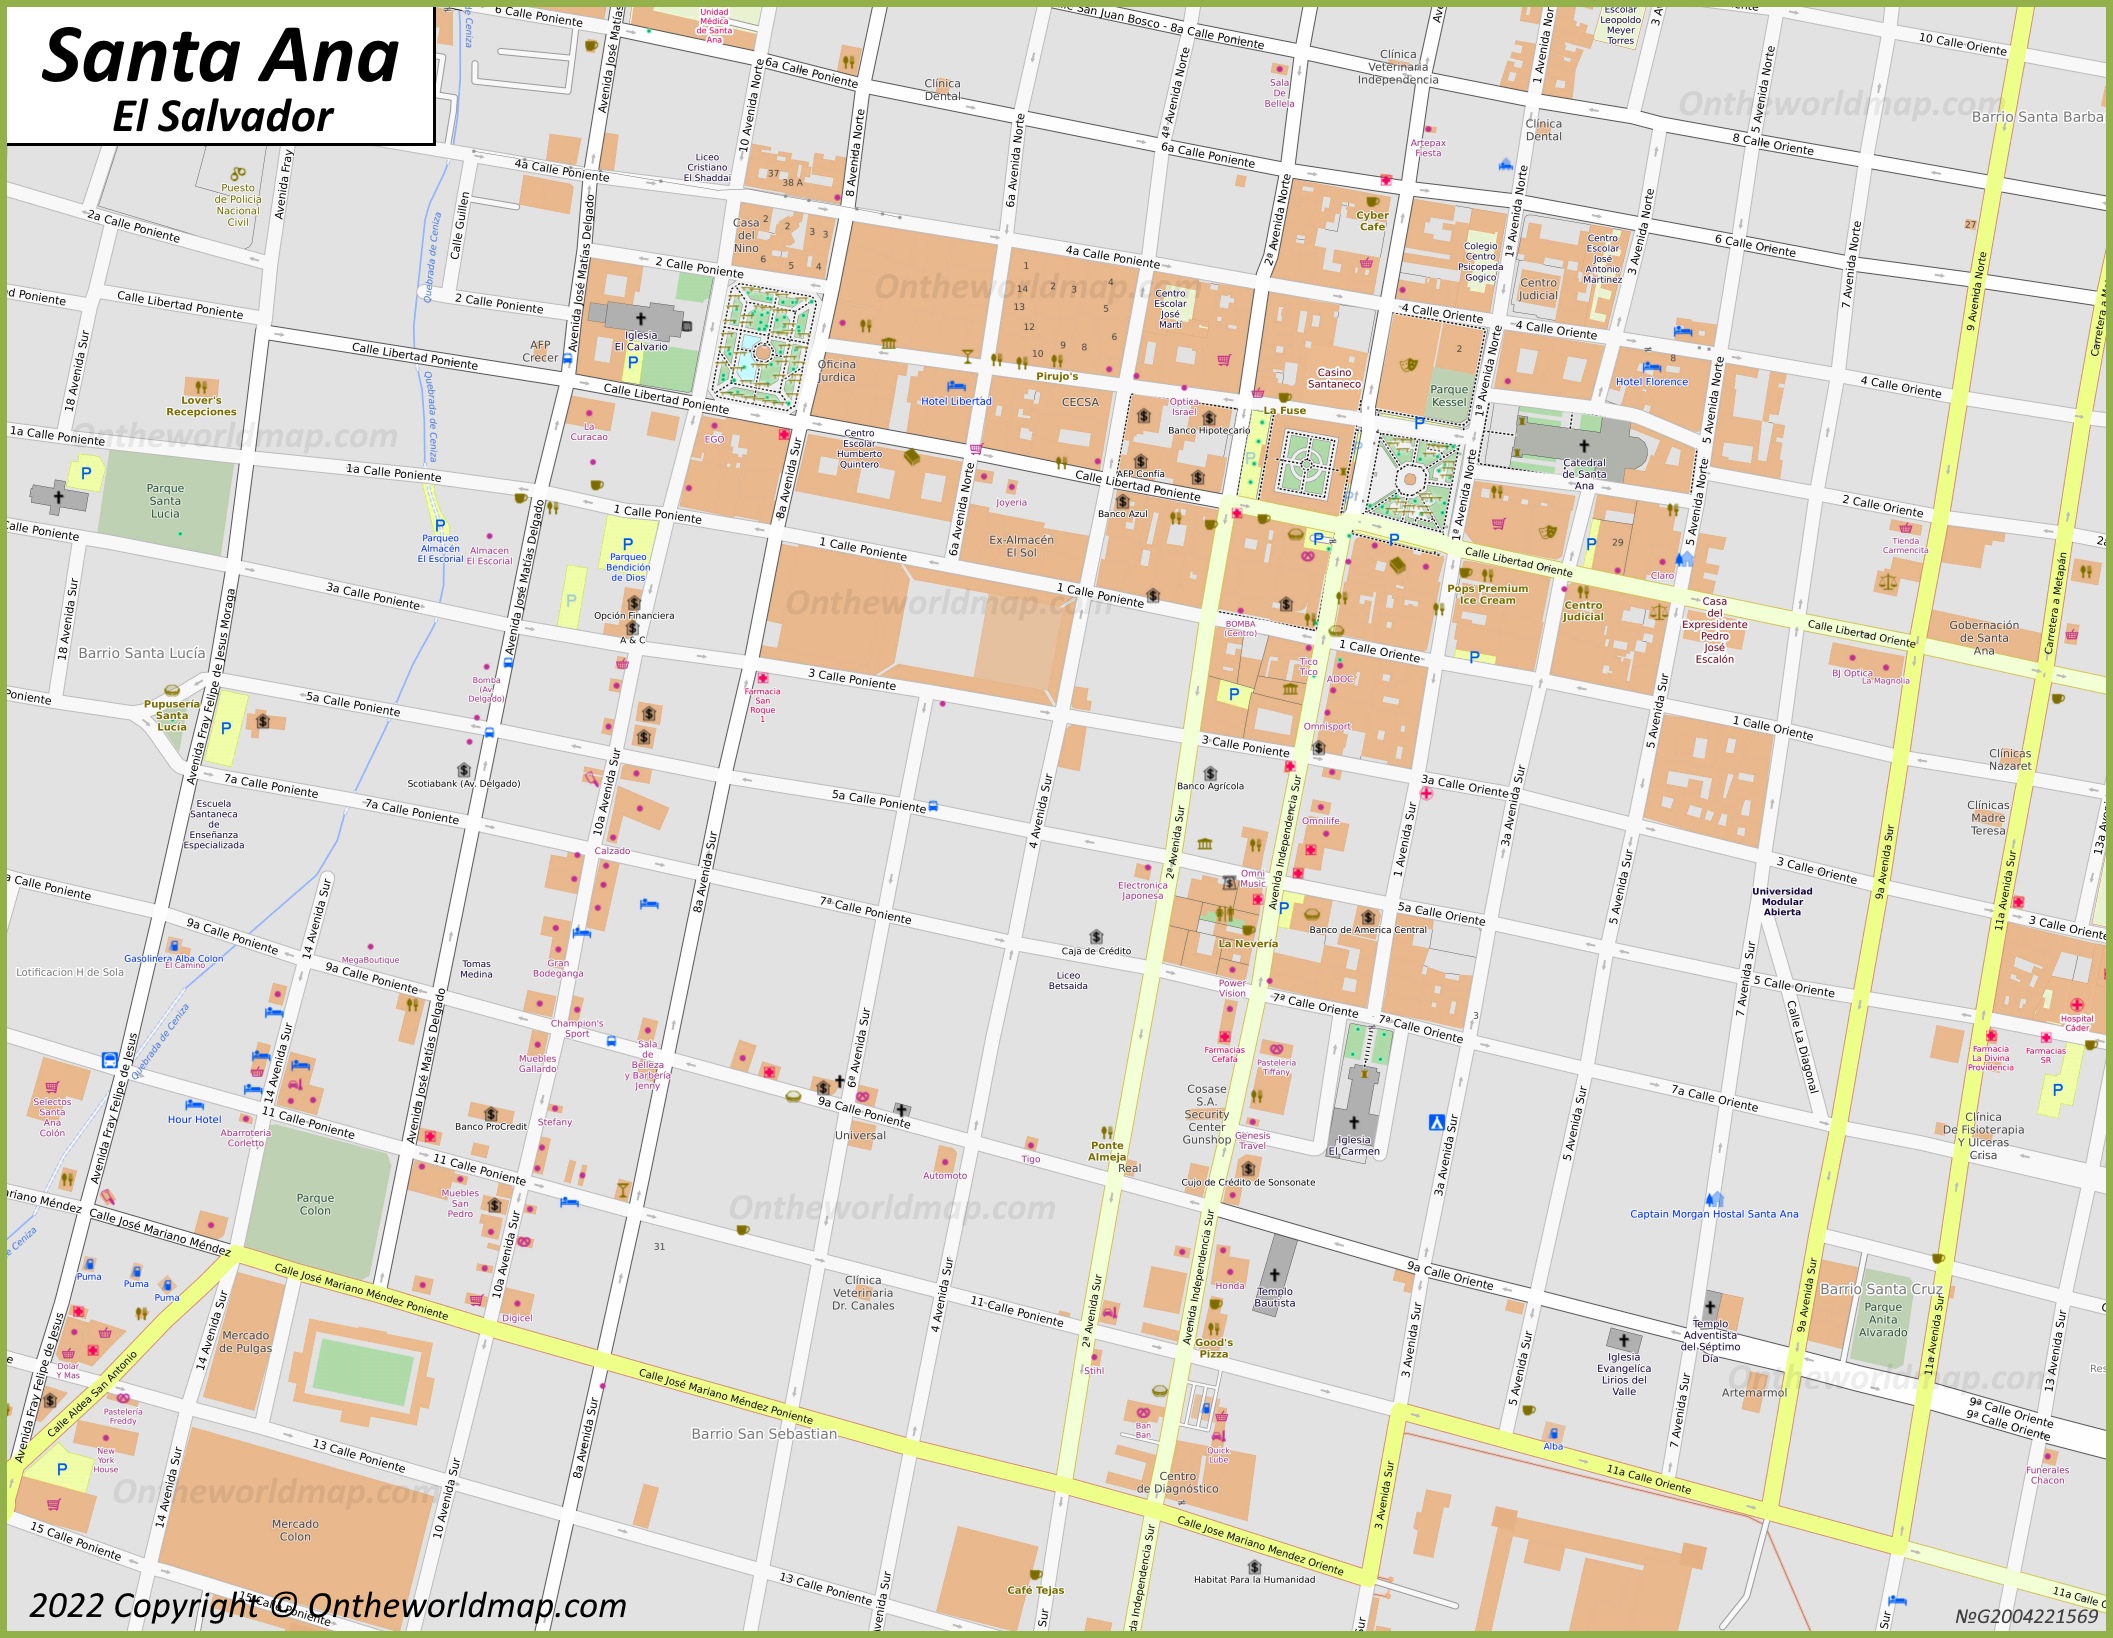 Santa Ana City Centre Map